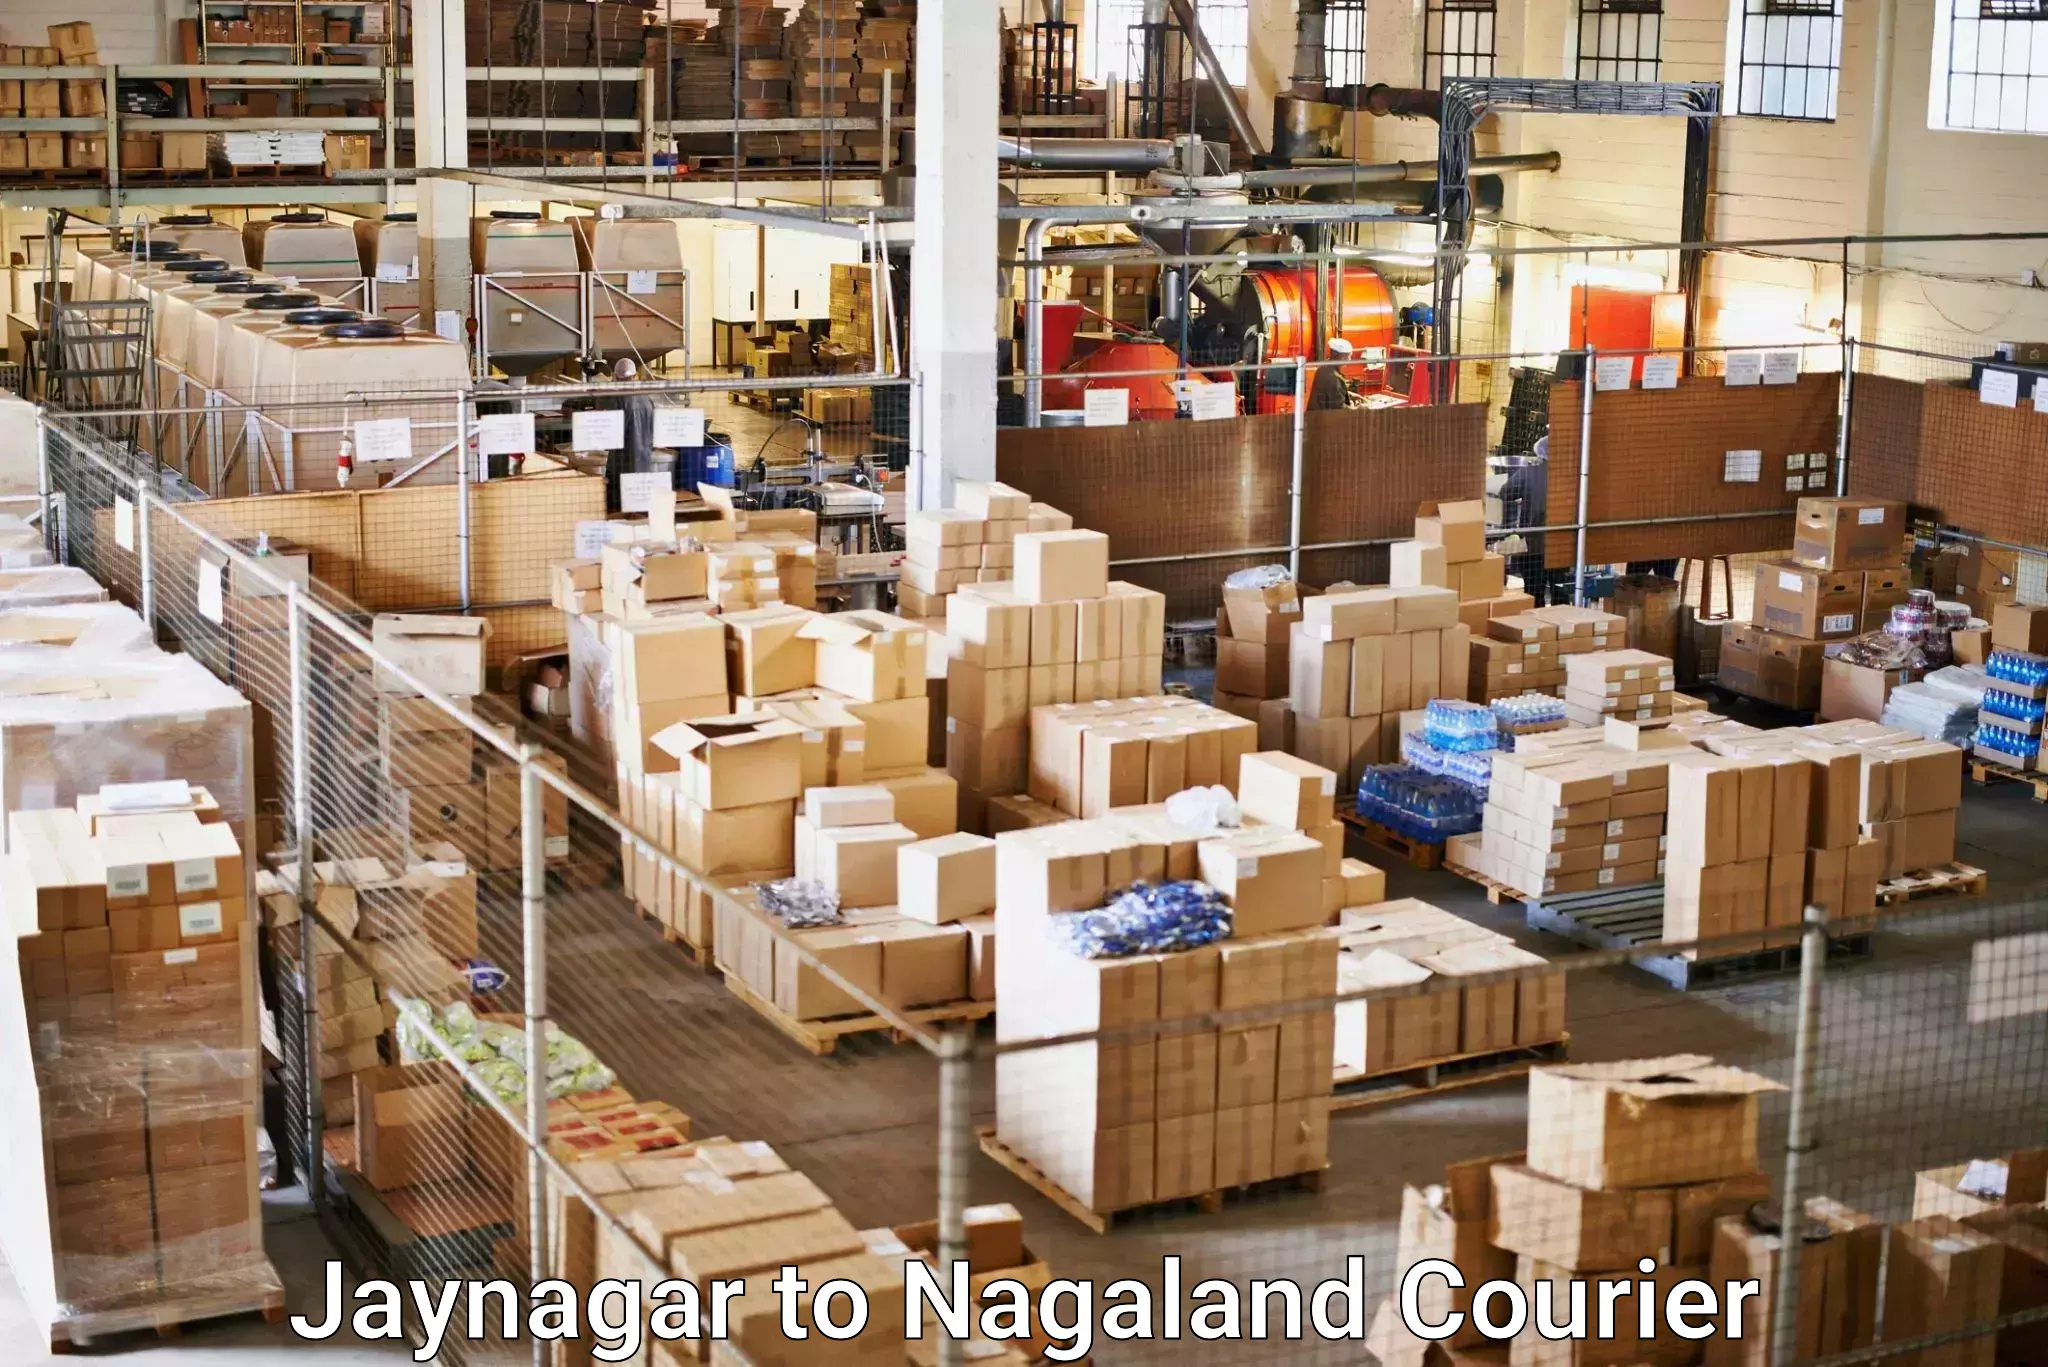 Global parcel delivery Jaynagar to Nagaland